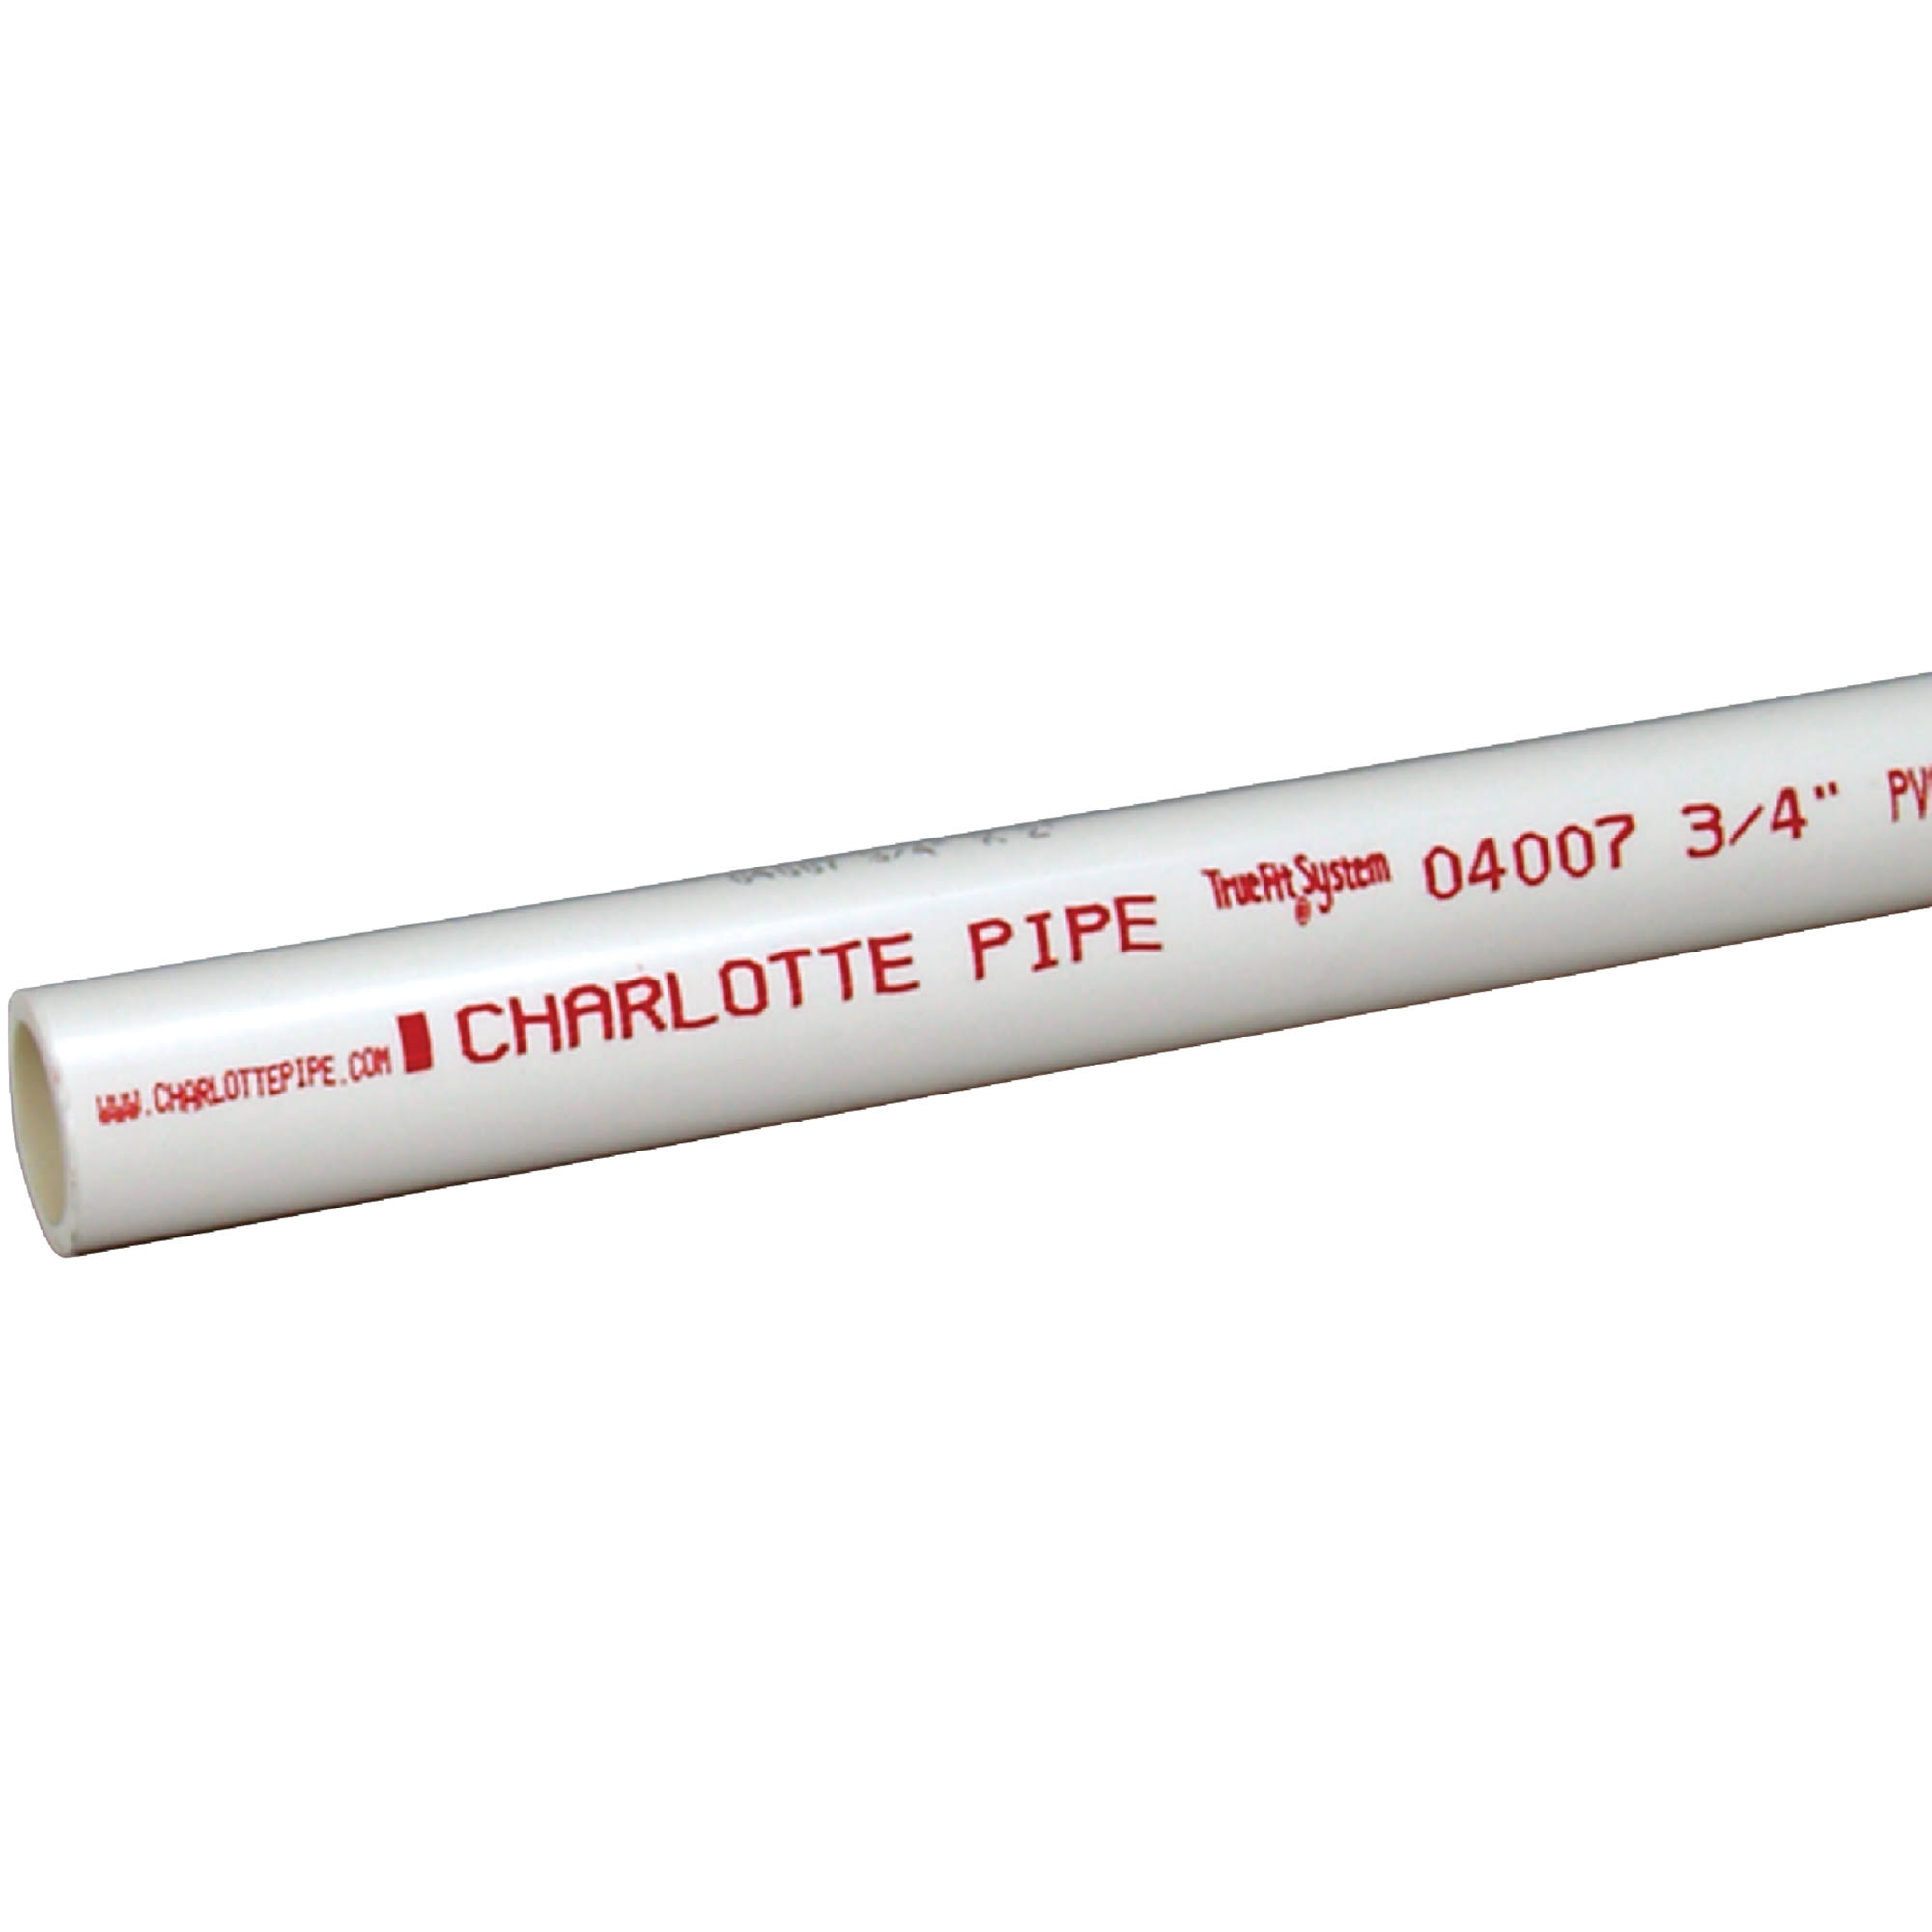 Charlotte Pipe Schedule 40 PVC Pressure Pipe - 3/4" x 10'